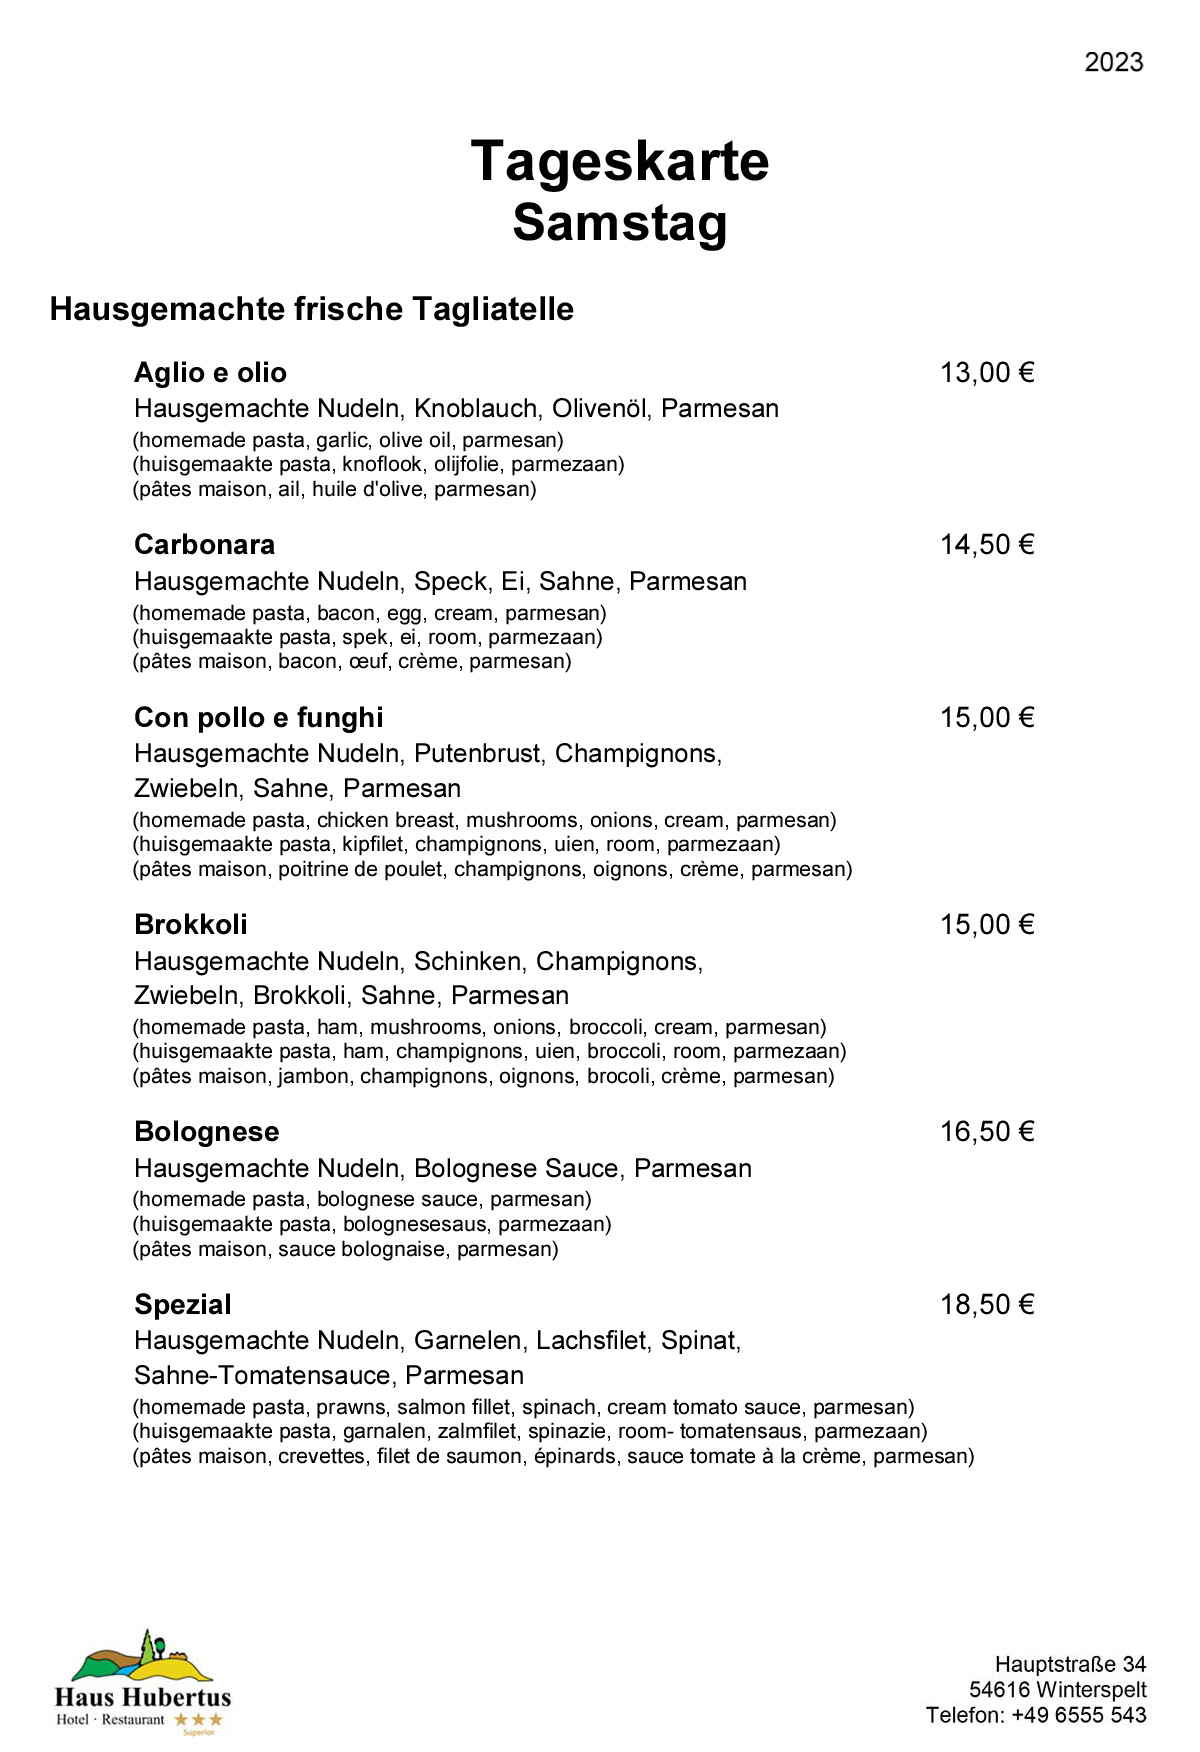 Hotel - Restaurant Haus Hubertus - Menu 02/2023 - Daily menu / Saturday